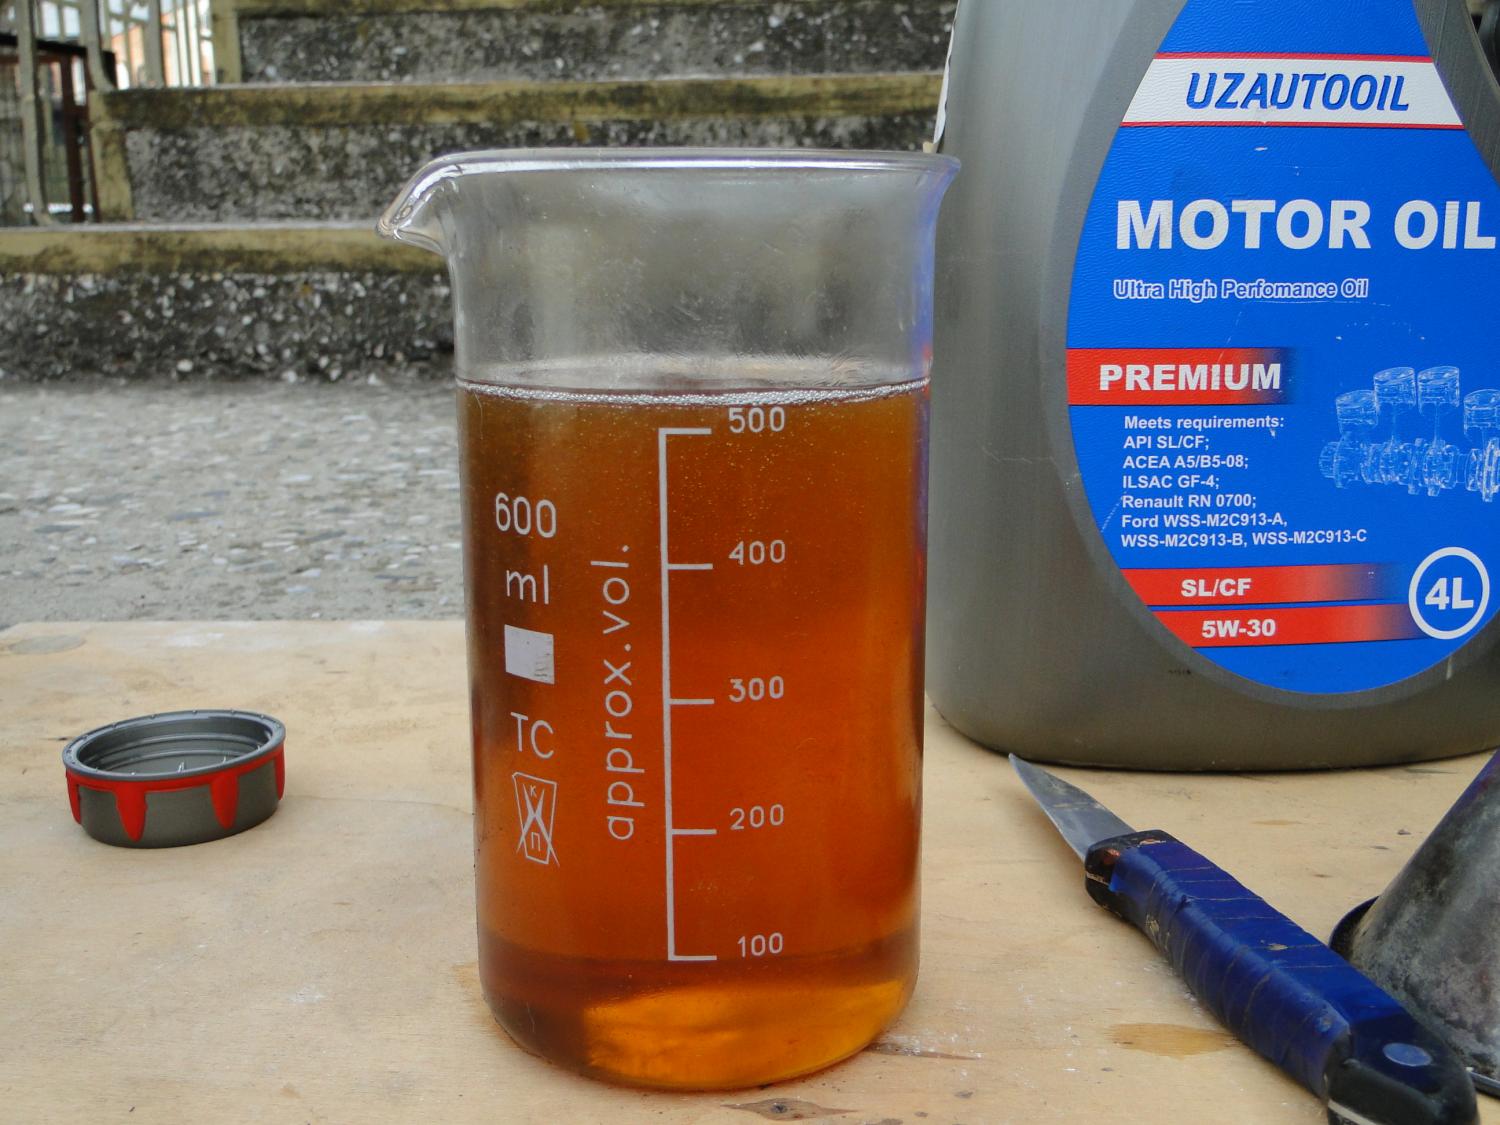 Литр масла на 50 литров бензина. Литр моторного масла. 100 Грамм моторного масла. Емкость для трансмиссионного масла. Мерка для масла моторного масла.